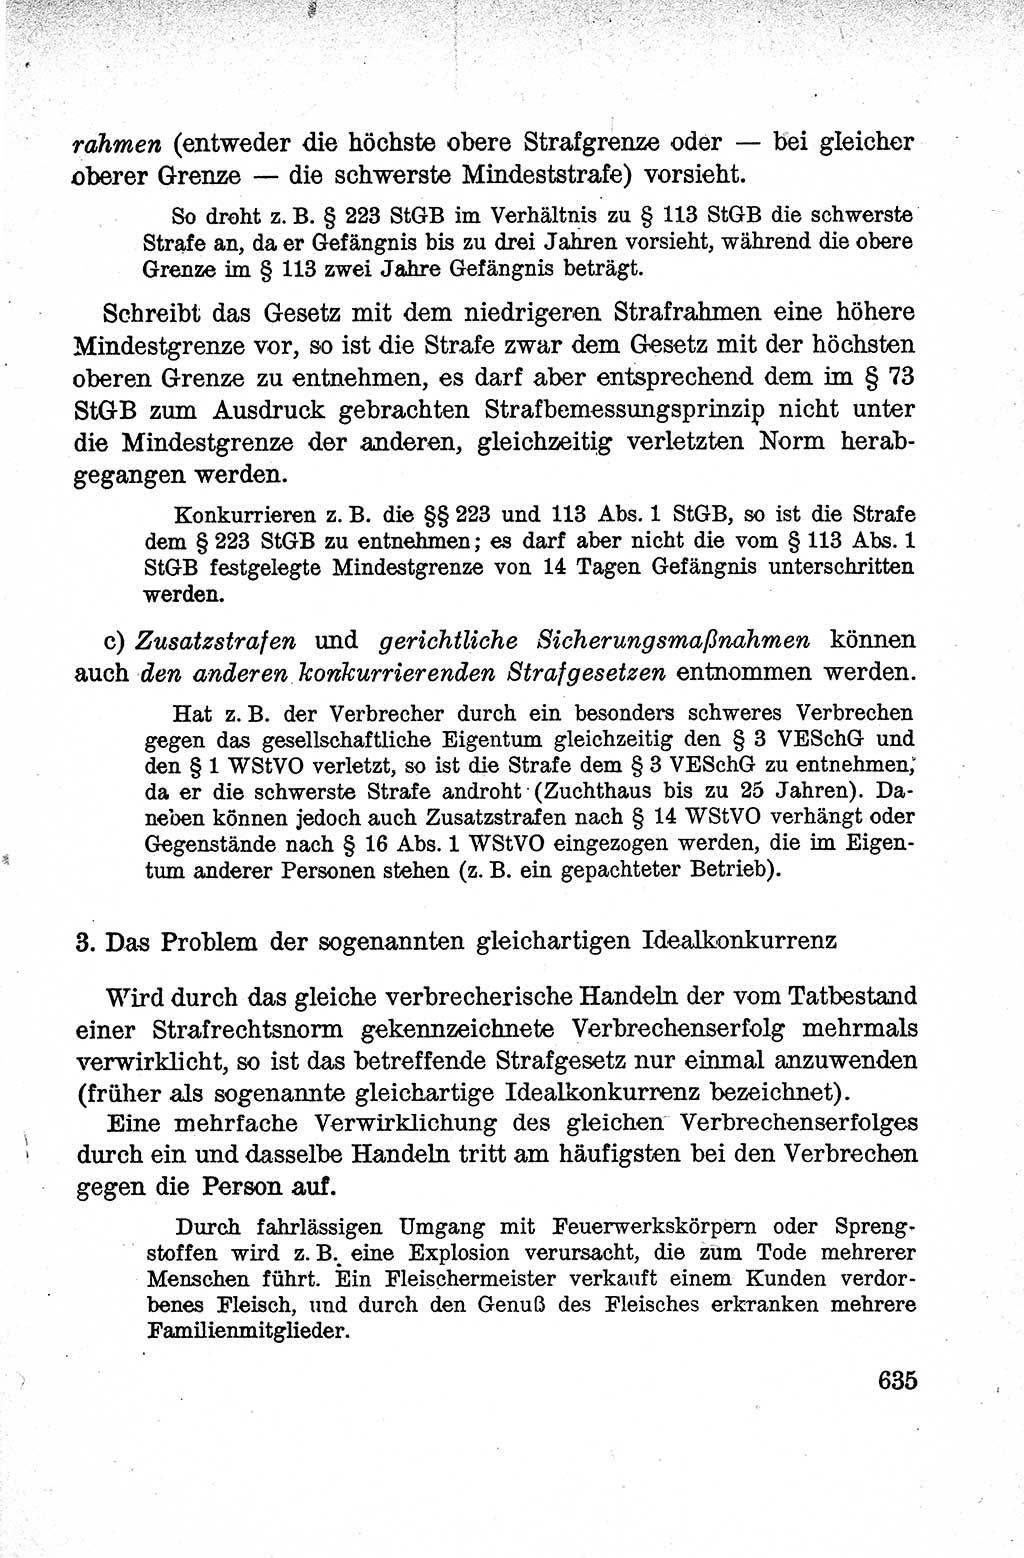 Lehrbuch des Strafrechts der Deutschen Demokratischen Republik (DDR), Allgemeiner Teil 1959, Seite 635 (Lb. Strafr. DDR AT 1959, S. 635)